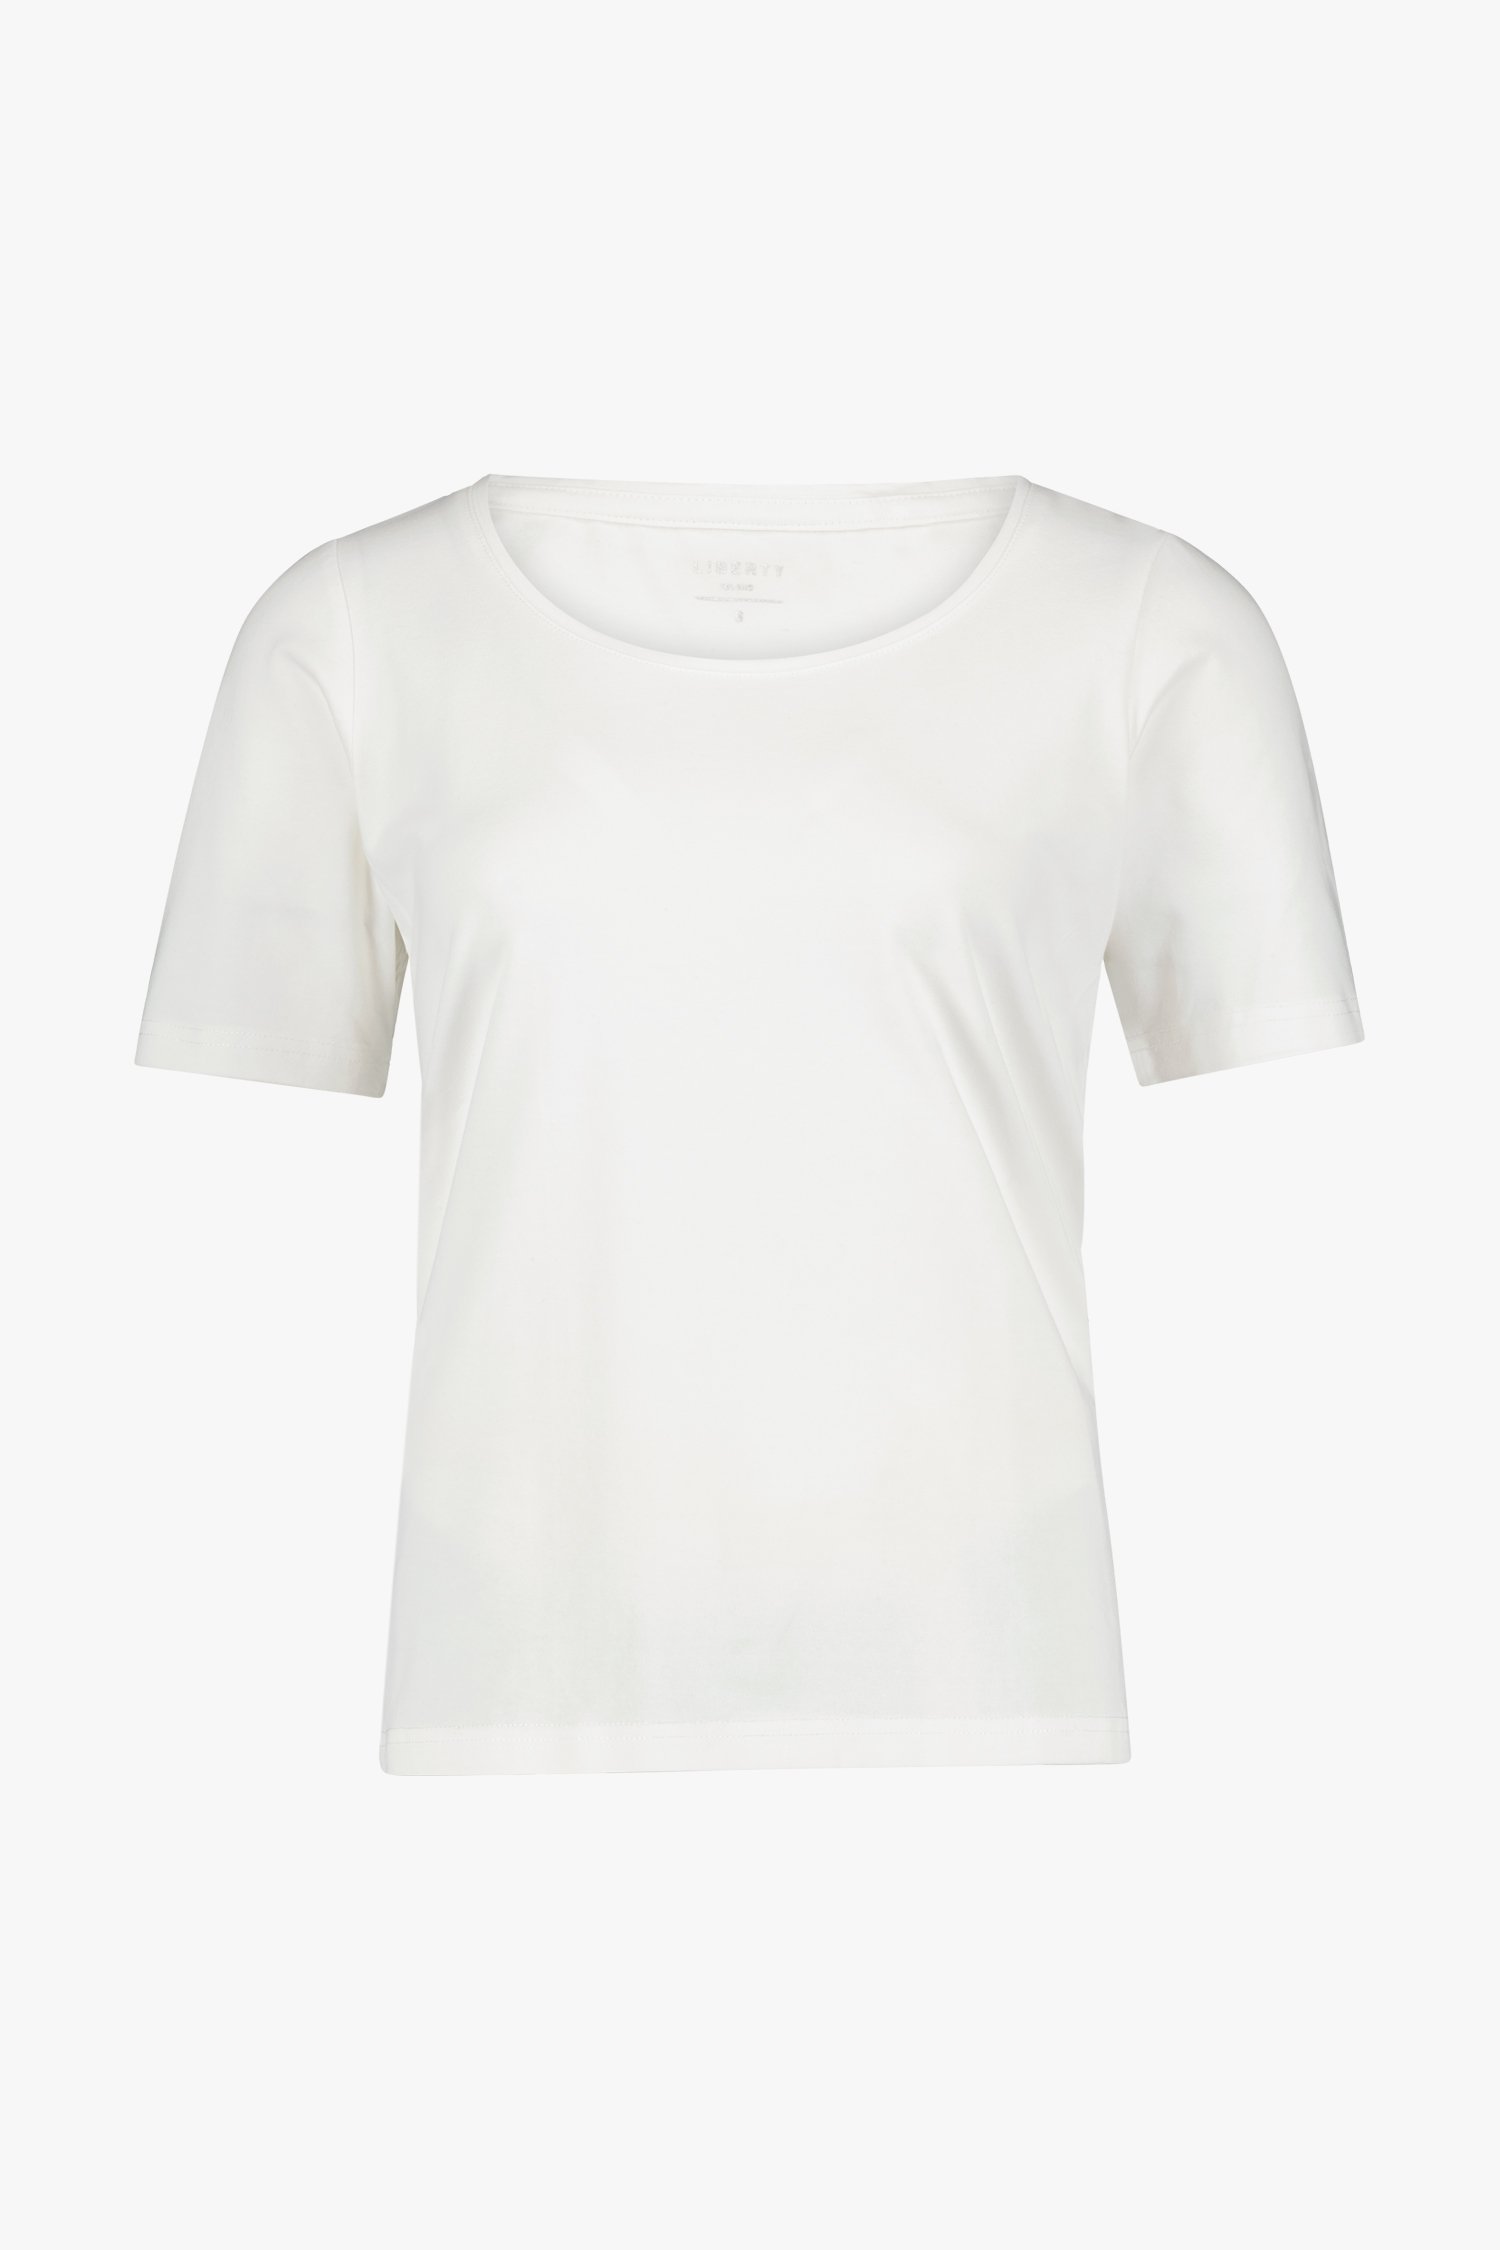 T-shirt blanc simple de Liberty Island pour Femmes